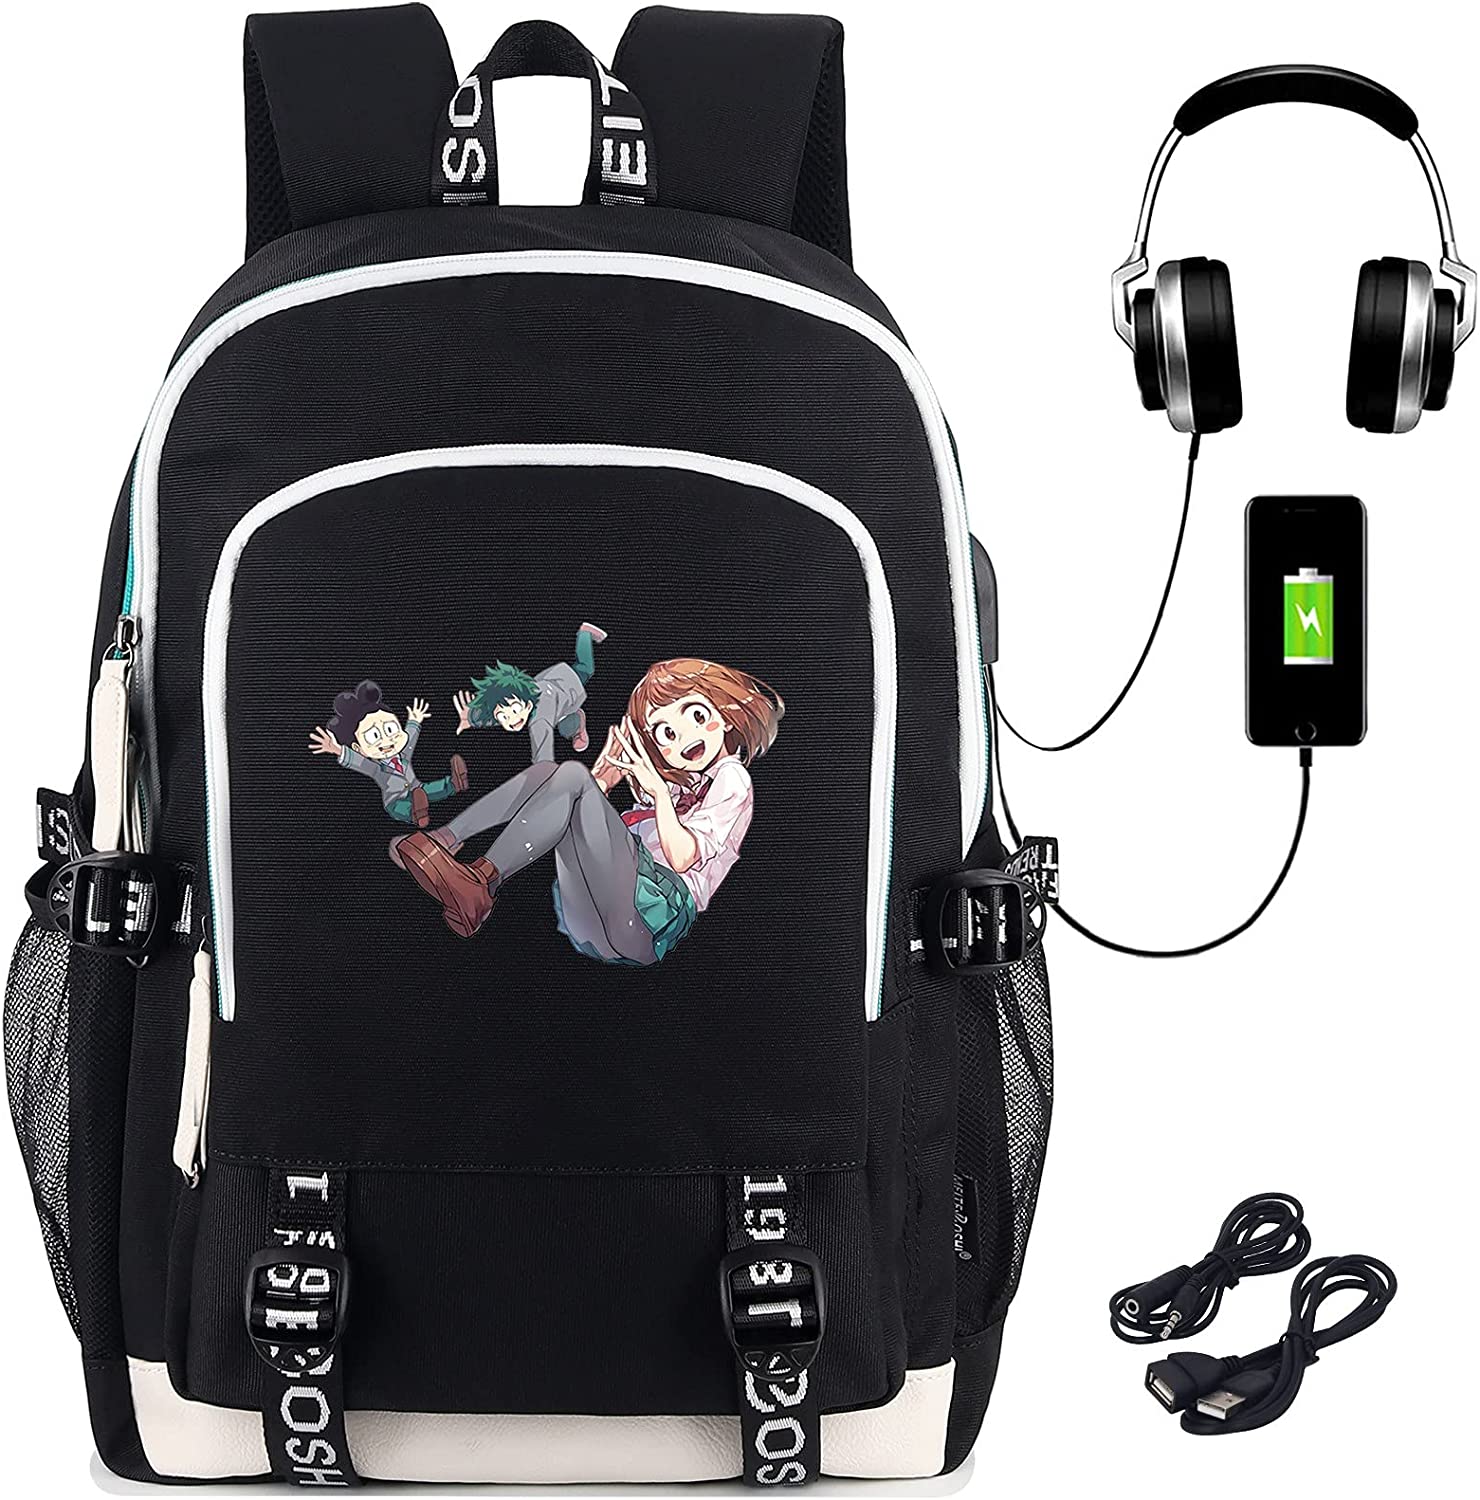 Mha Gaming Backpack